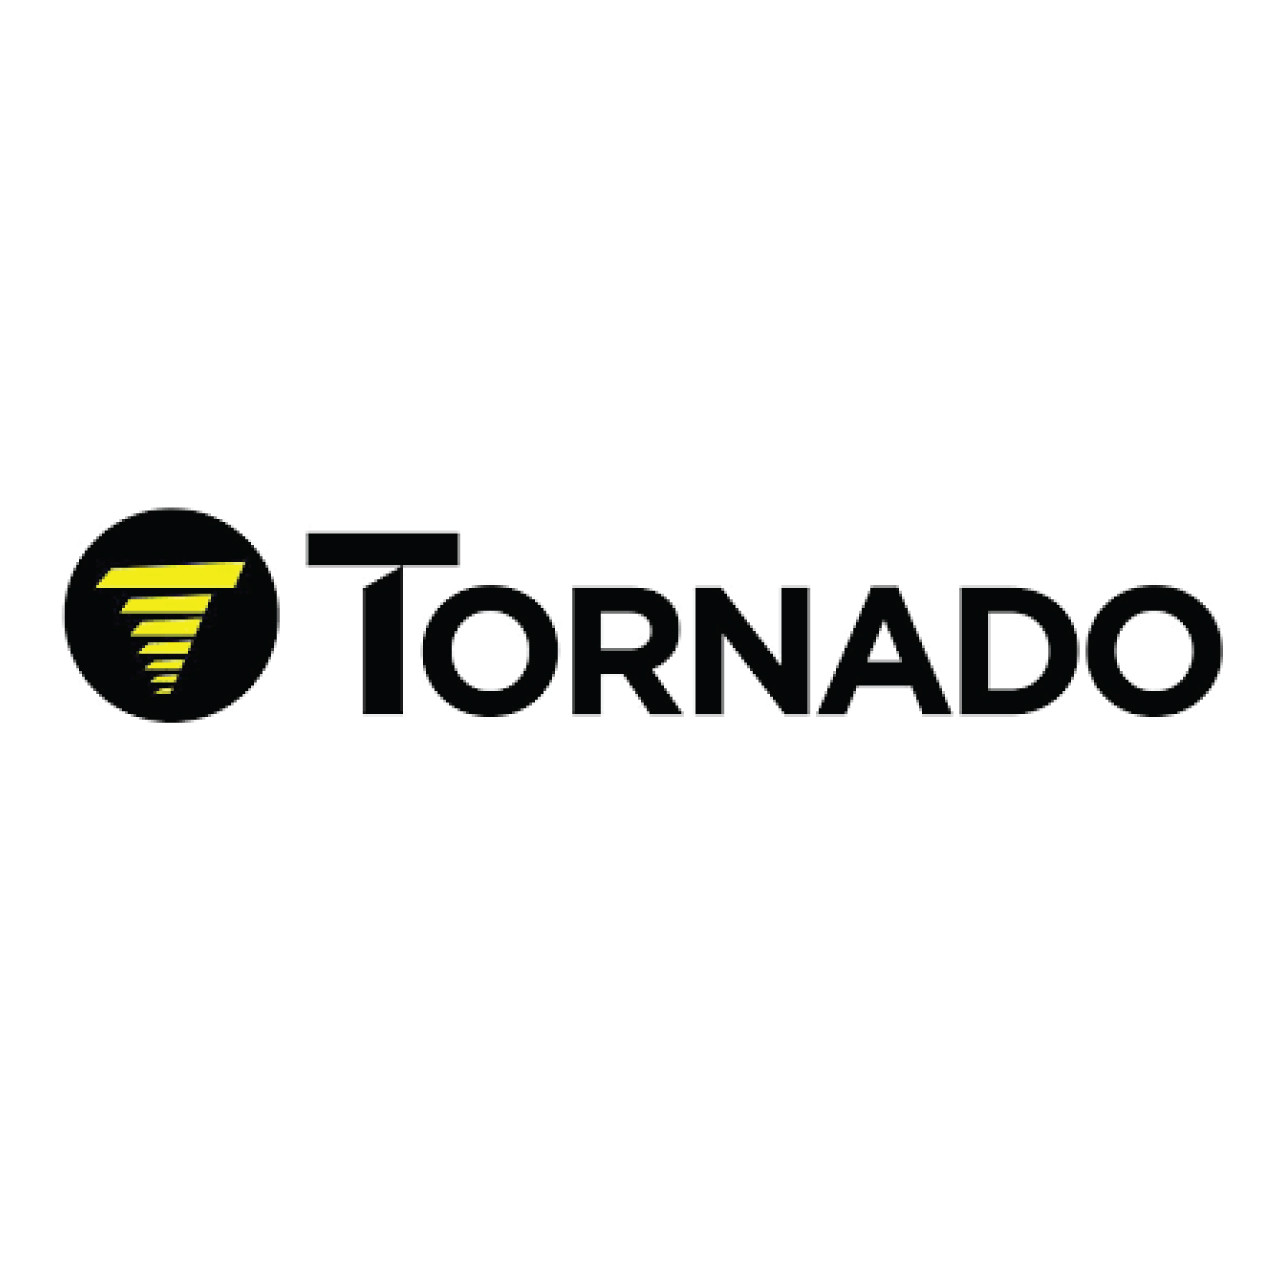 K66303160, Tornado K66303160, Tornado MICRO SWITCH, Tornado parts, tornado scrubber parts, tornado vacuum parts, tornado extractor parts, tornado floor machine parts